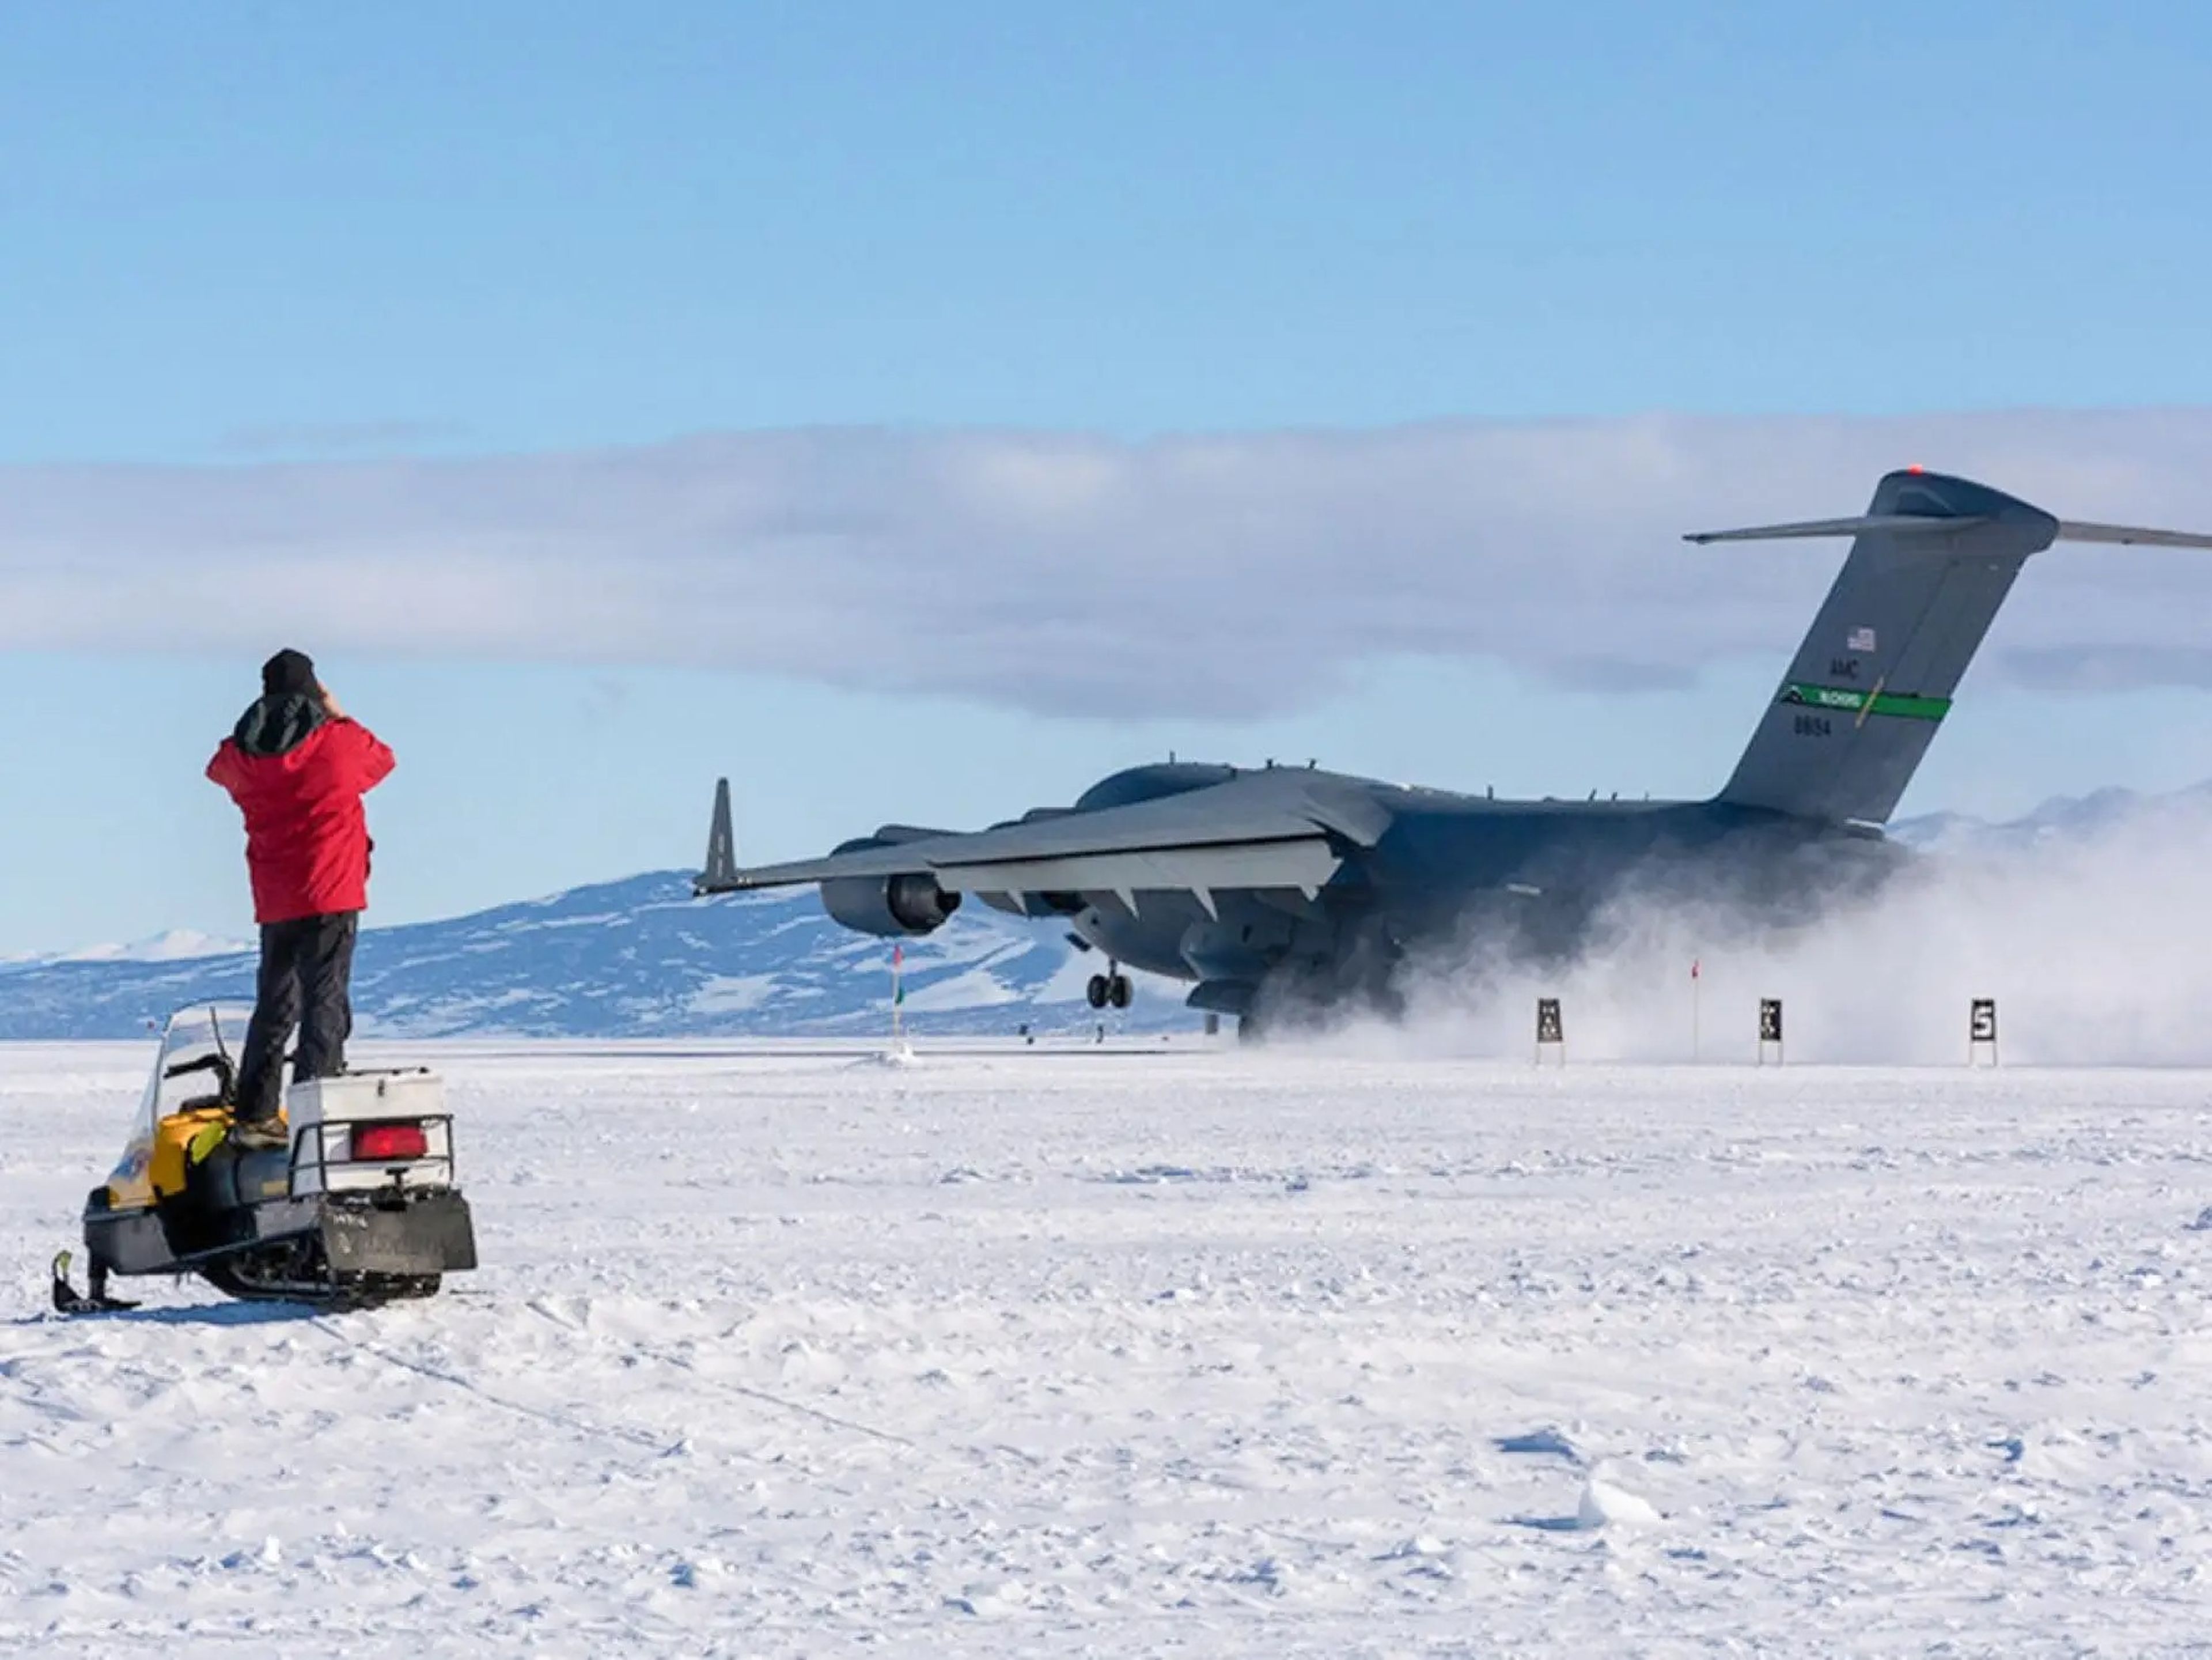 Utilizada por las Fuerzas Aéreas estadounidenses, la pista Phoenix de la Antártida se construye compactando densamente la nieve hasta que es "casi tan dura como el hormigón".